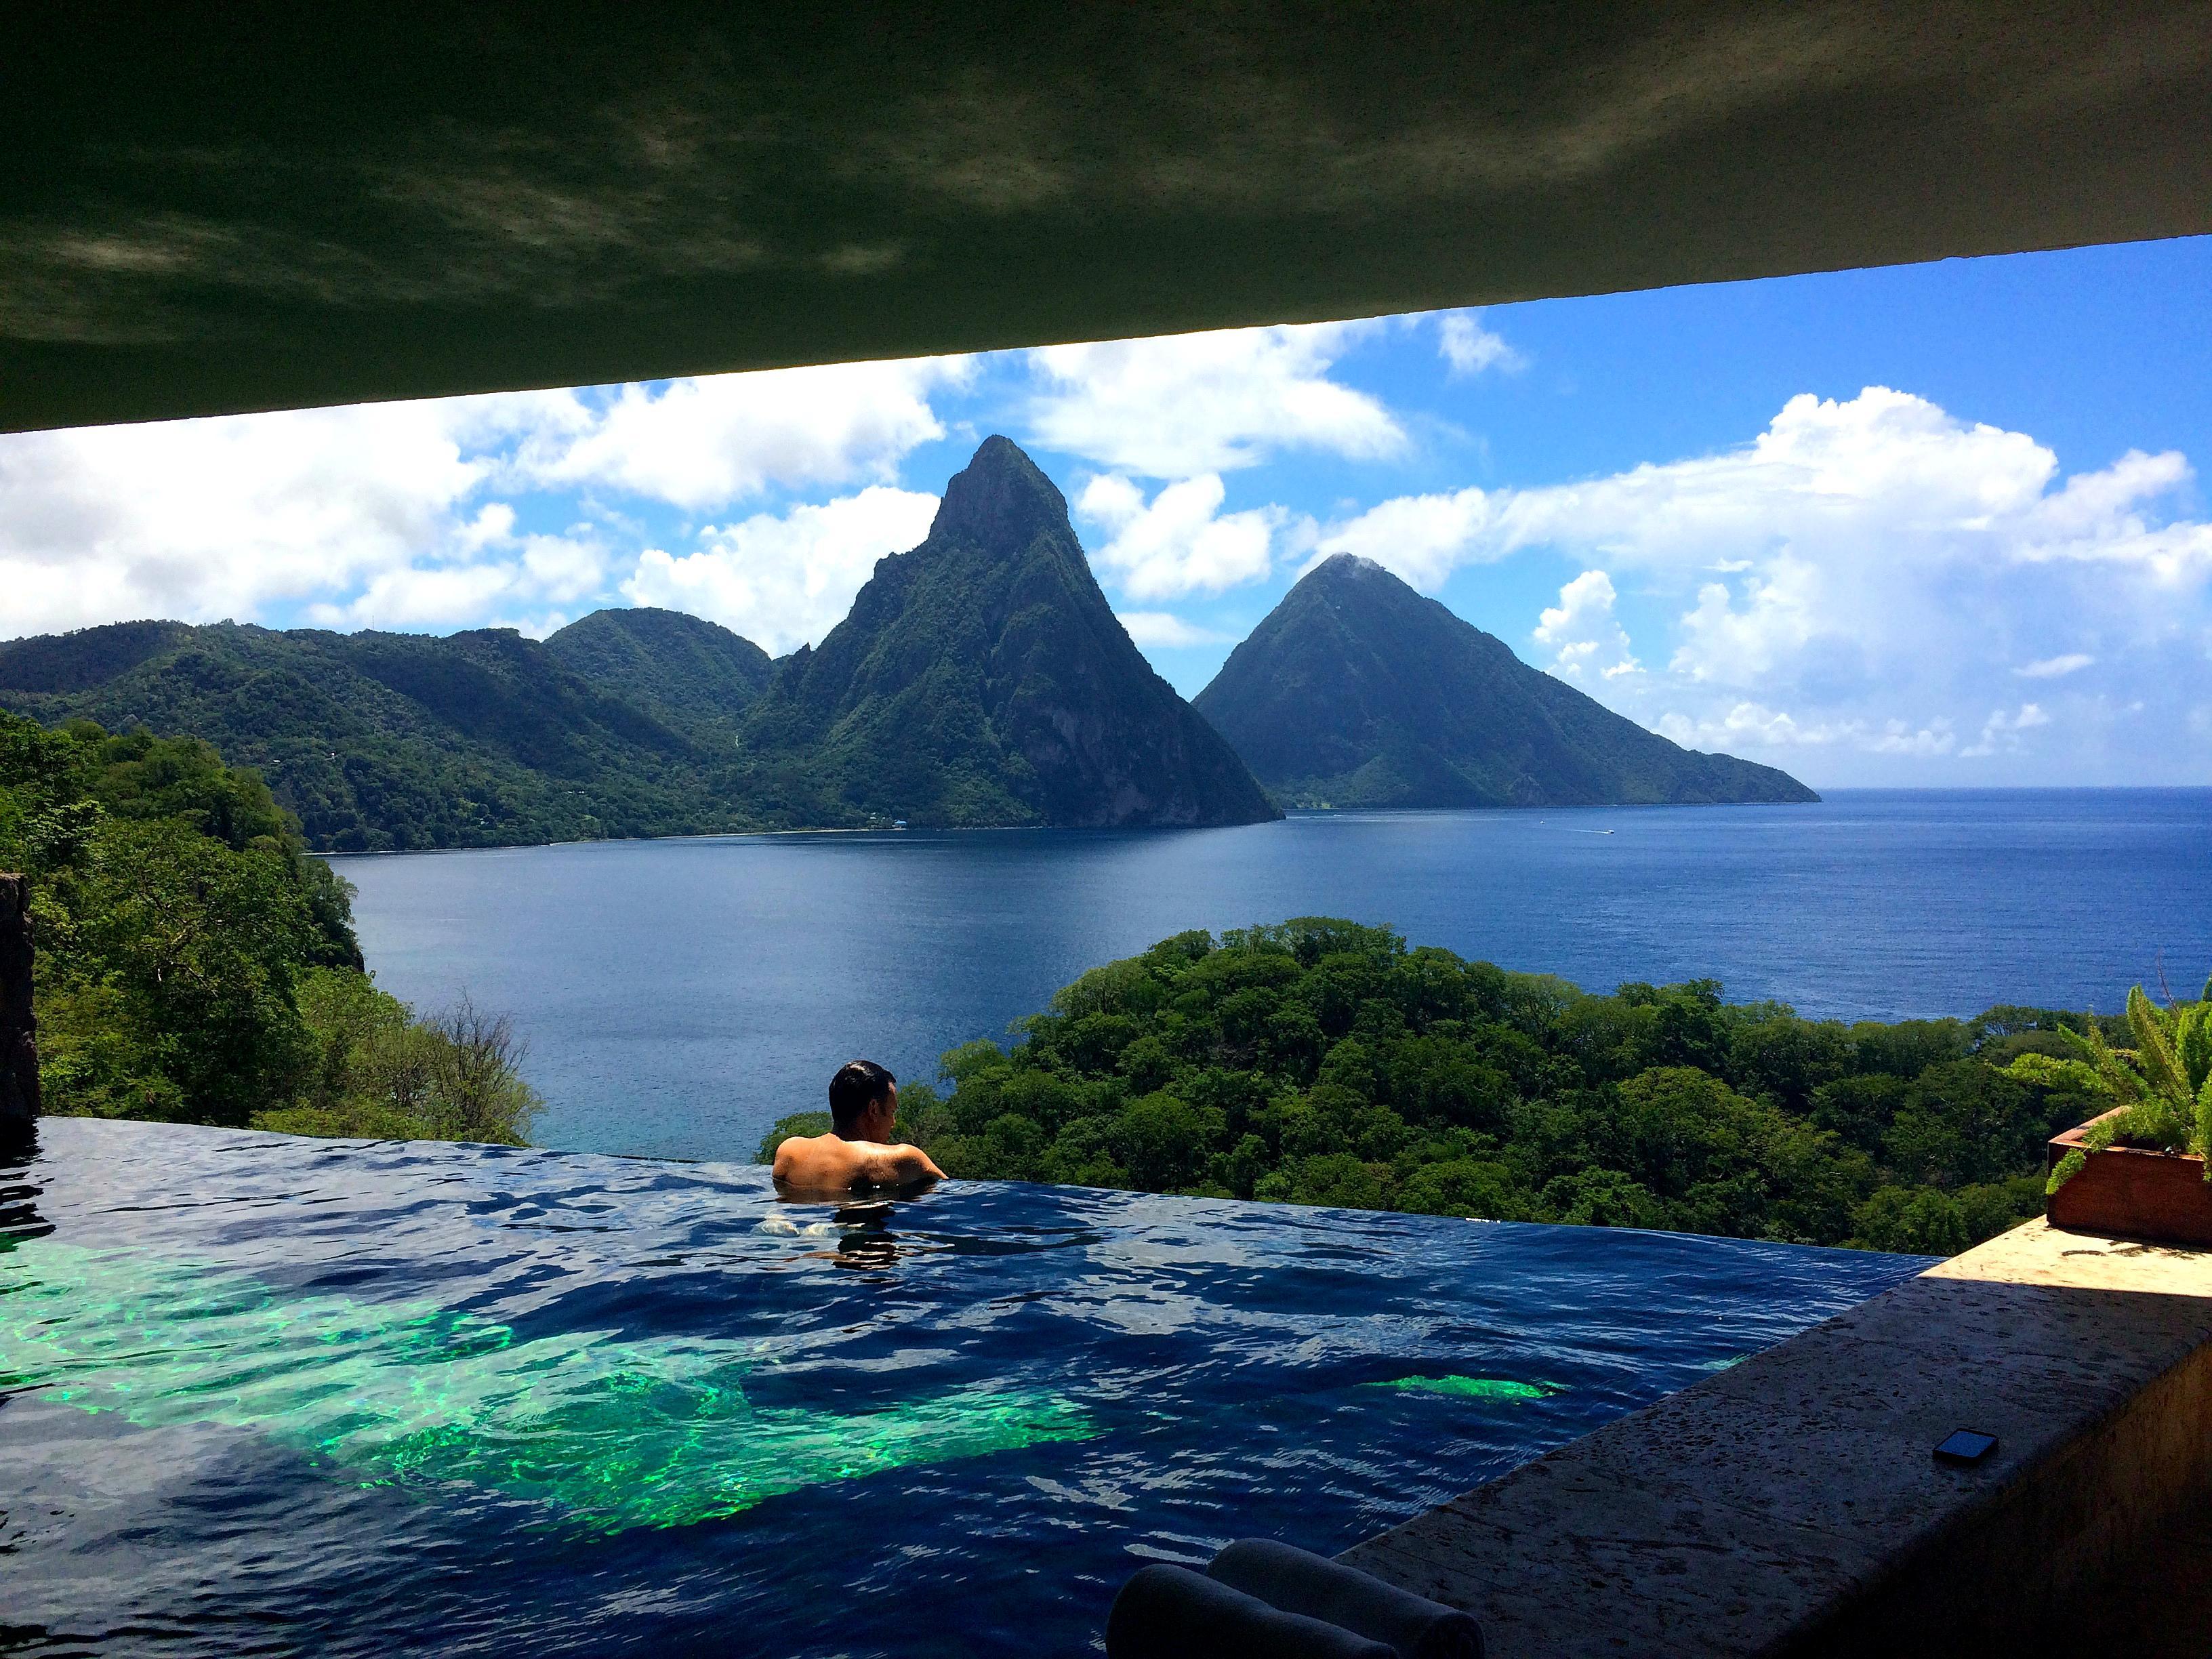 乌布空中花园酒店位于印度尼西亚的巴厘岛,是无边泳池爱好者的天堂